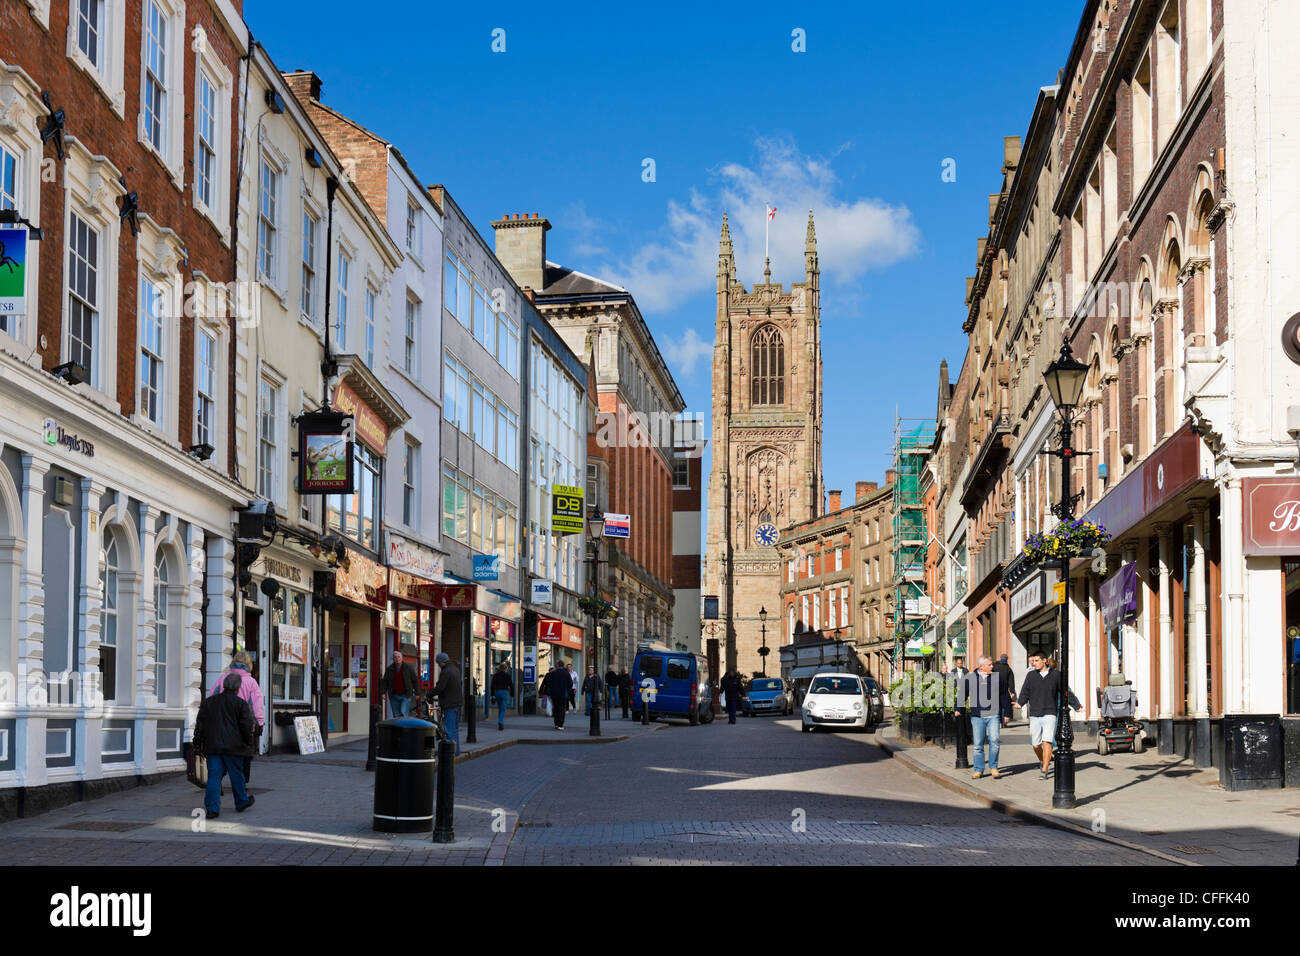 Vue vers le bas porte de fer dans le centre-ville en direction de la cathédrale, Derby, Derbyshire, East Midlands, Angleterre, RU Banque D'Images